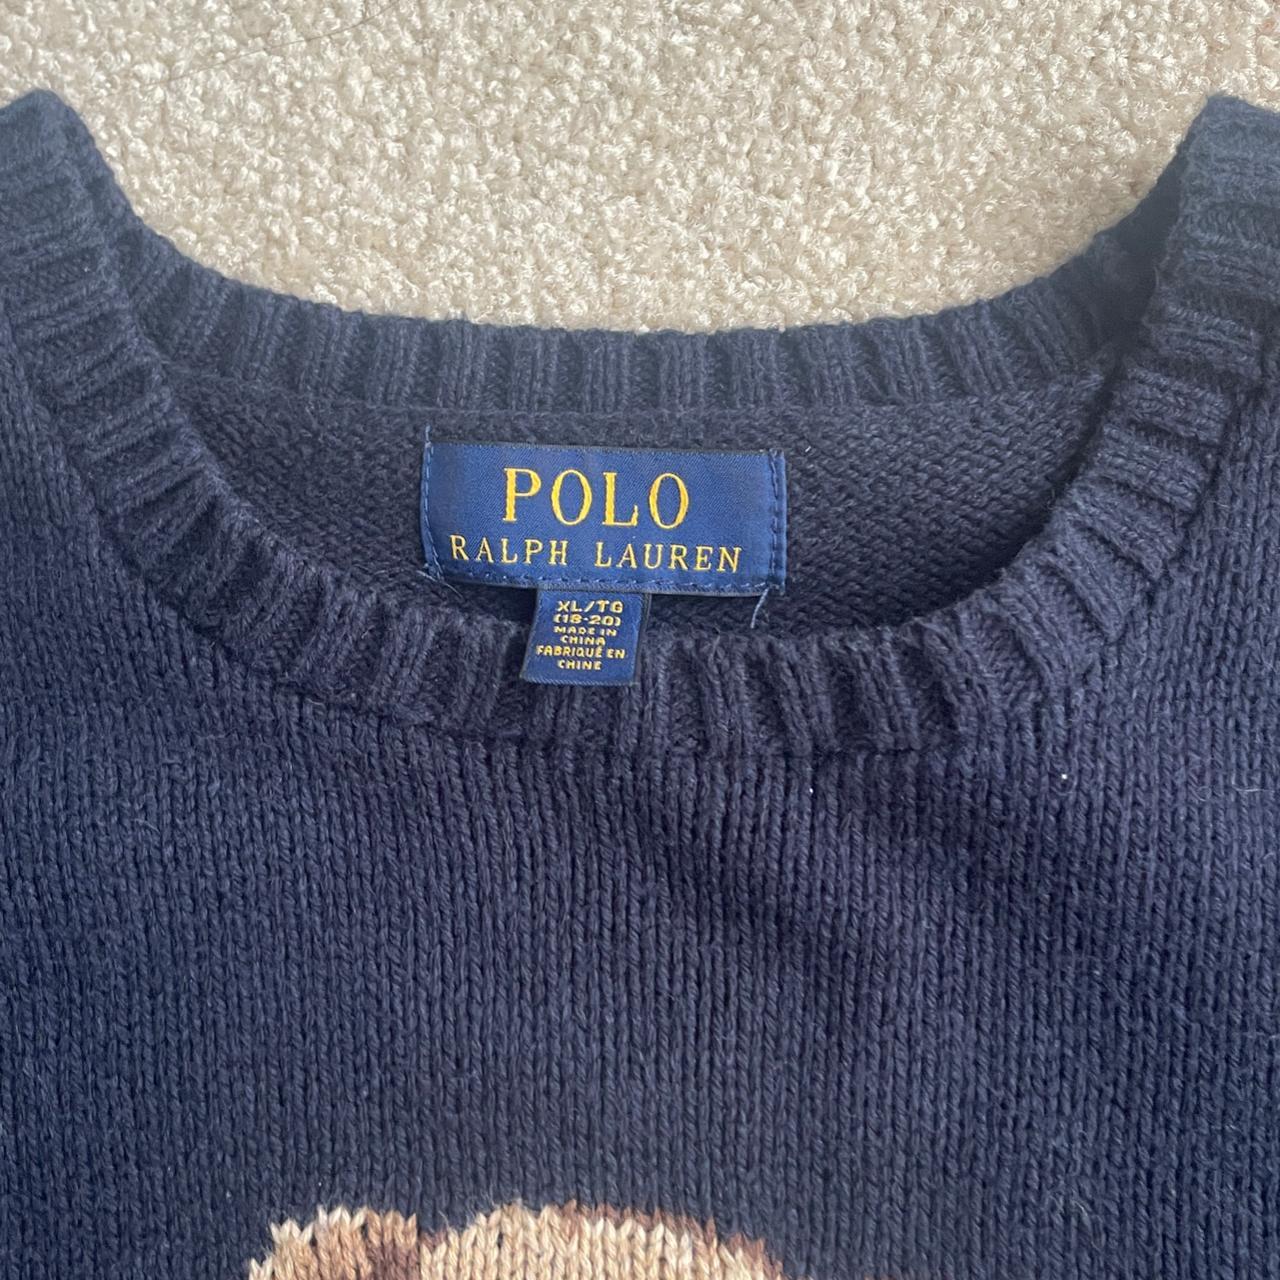 Ralph Lauren sweater Polo Ralph Lauren bear knit so... - Depop